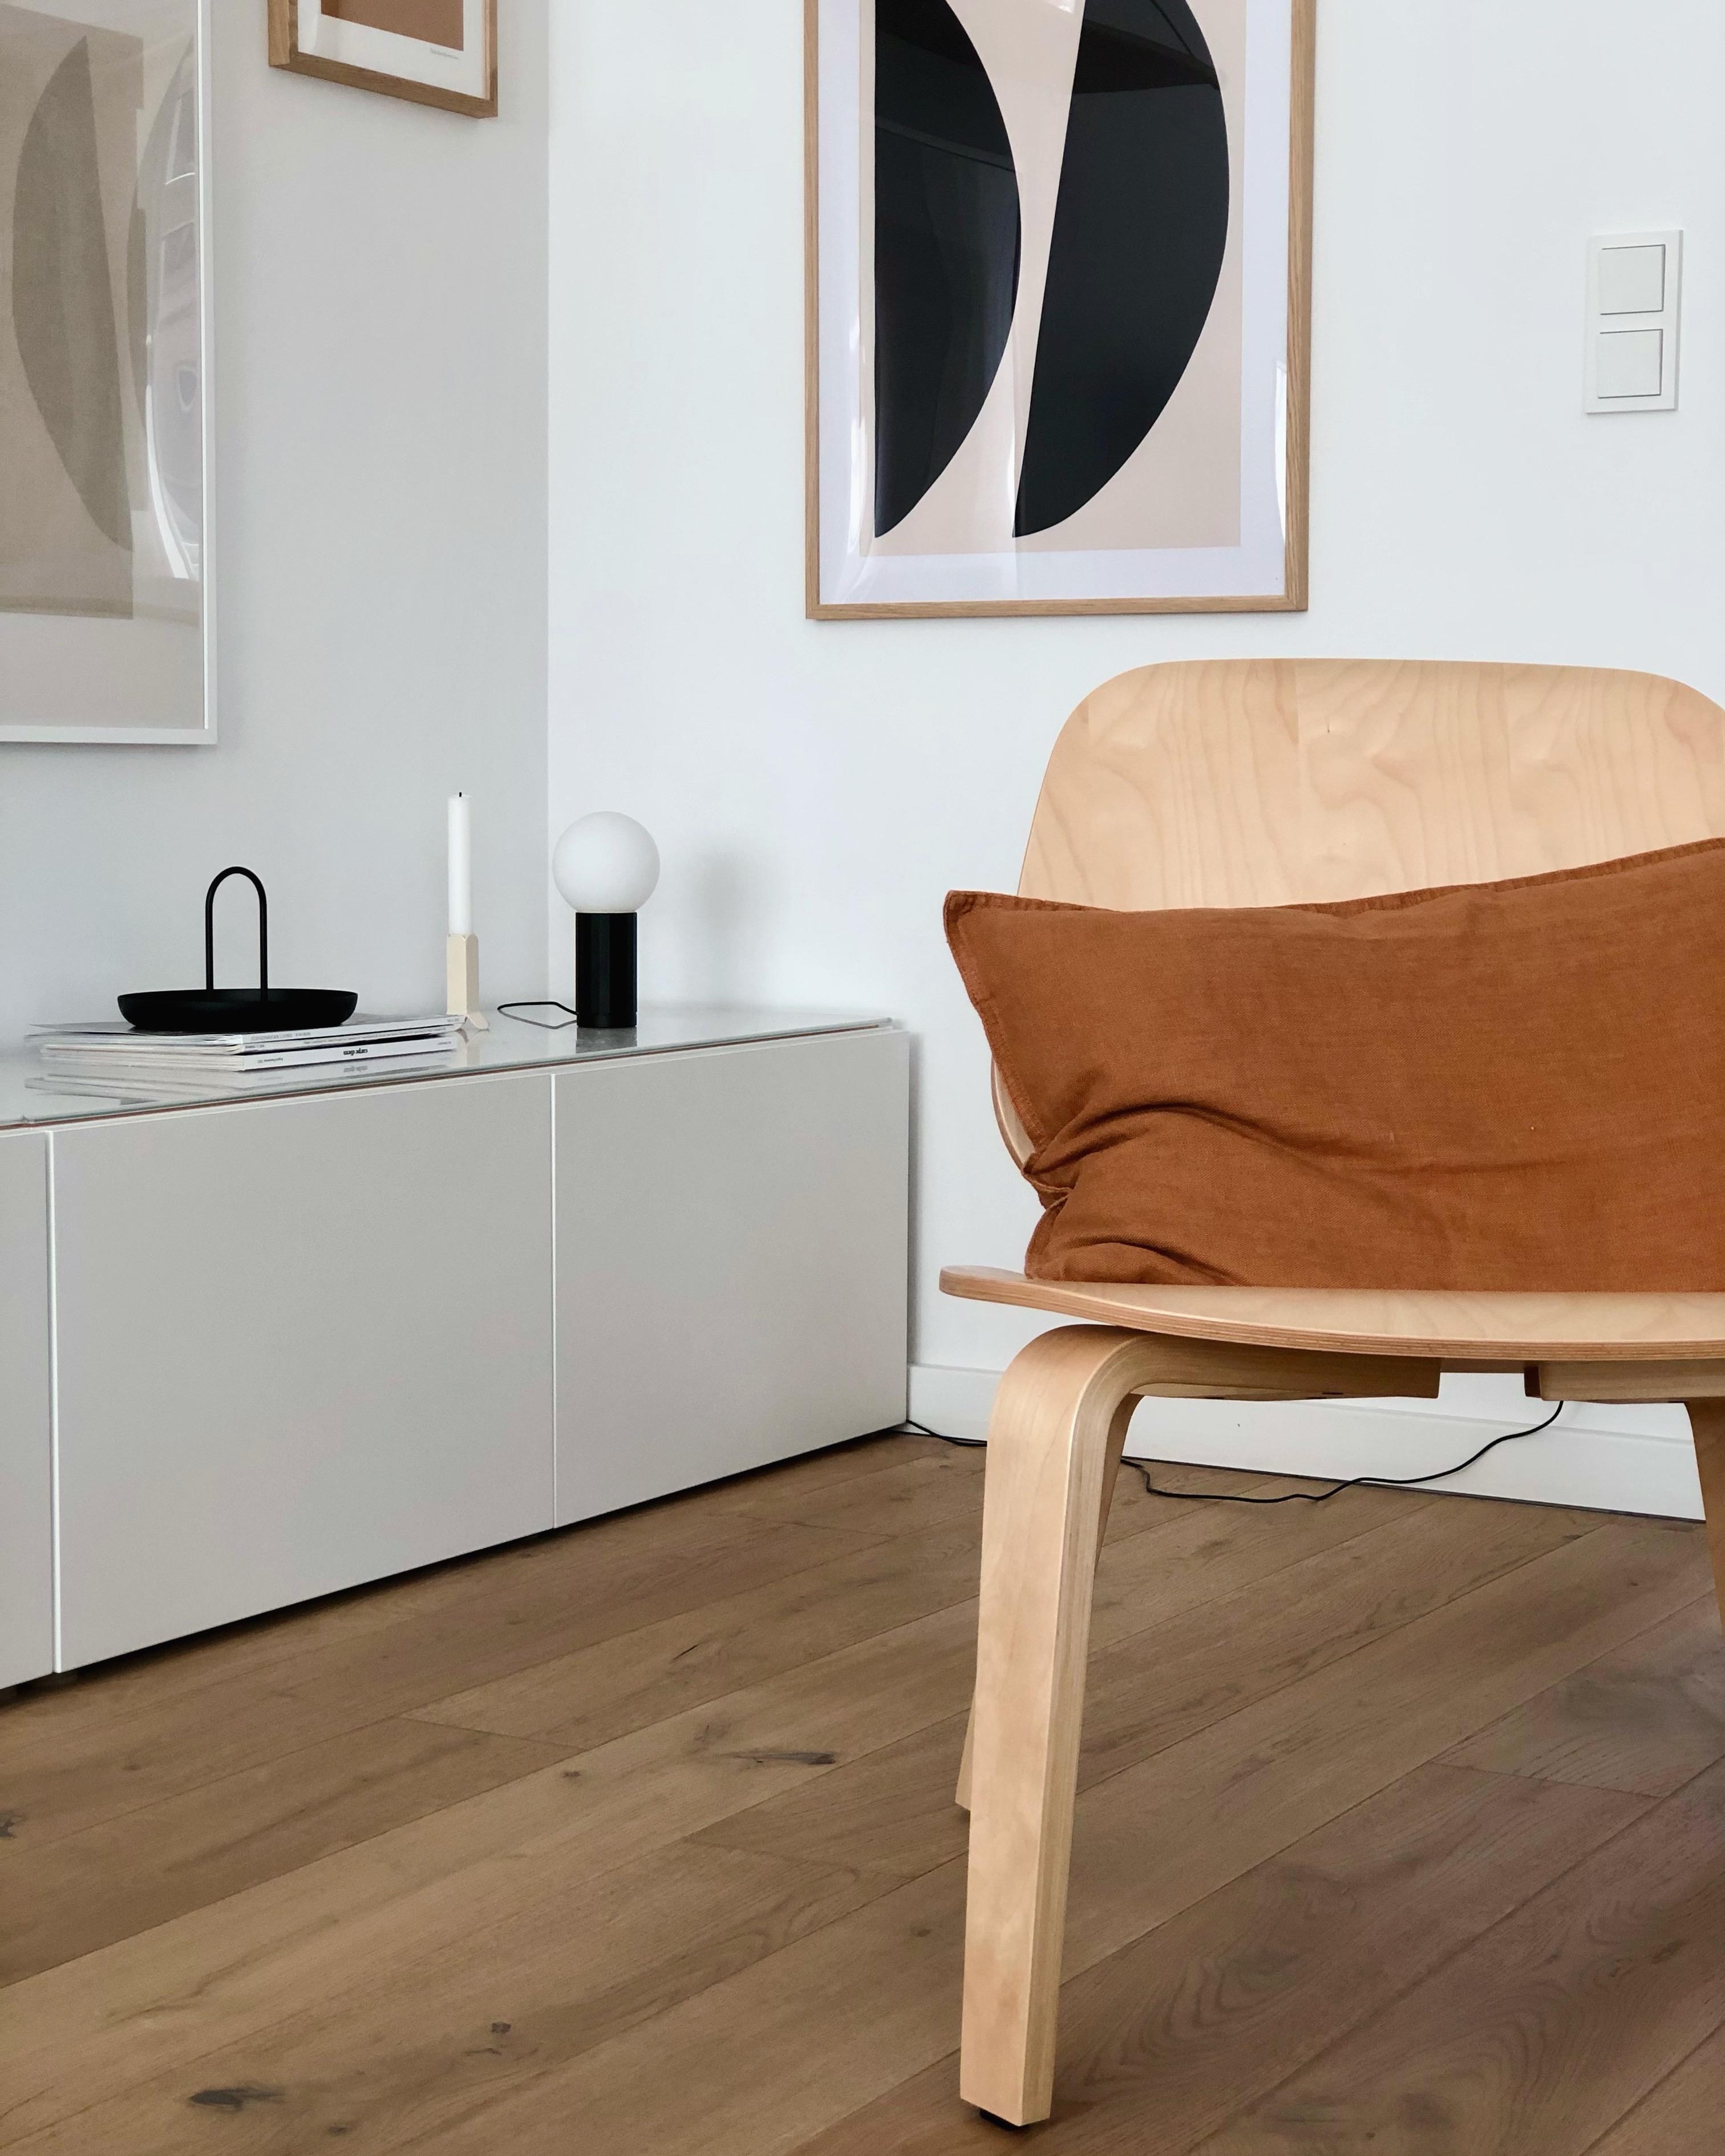 #wohnzimmer #livingroom #ikea #sideboard #deko #wandgestaltung #prints #skandinavisch #scandi #interior #couchstyle